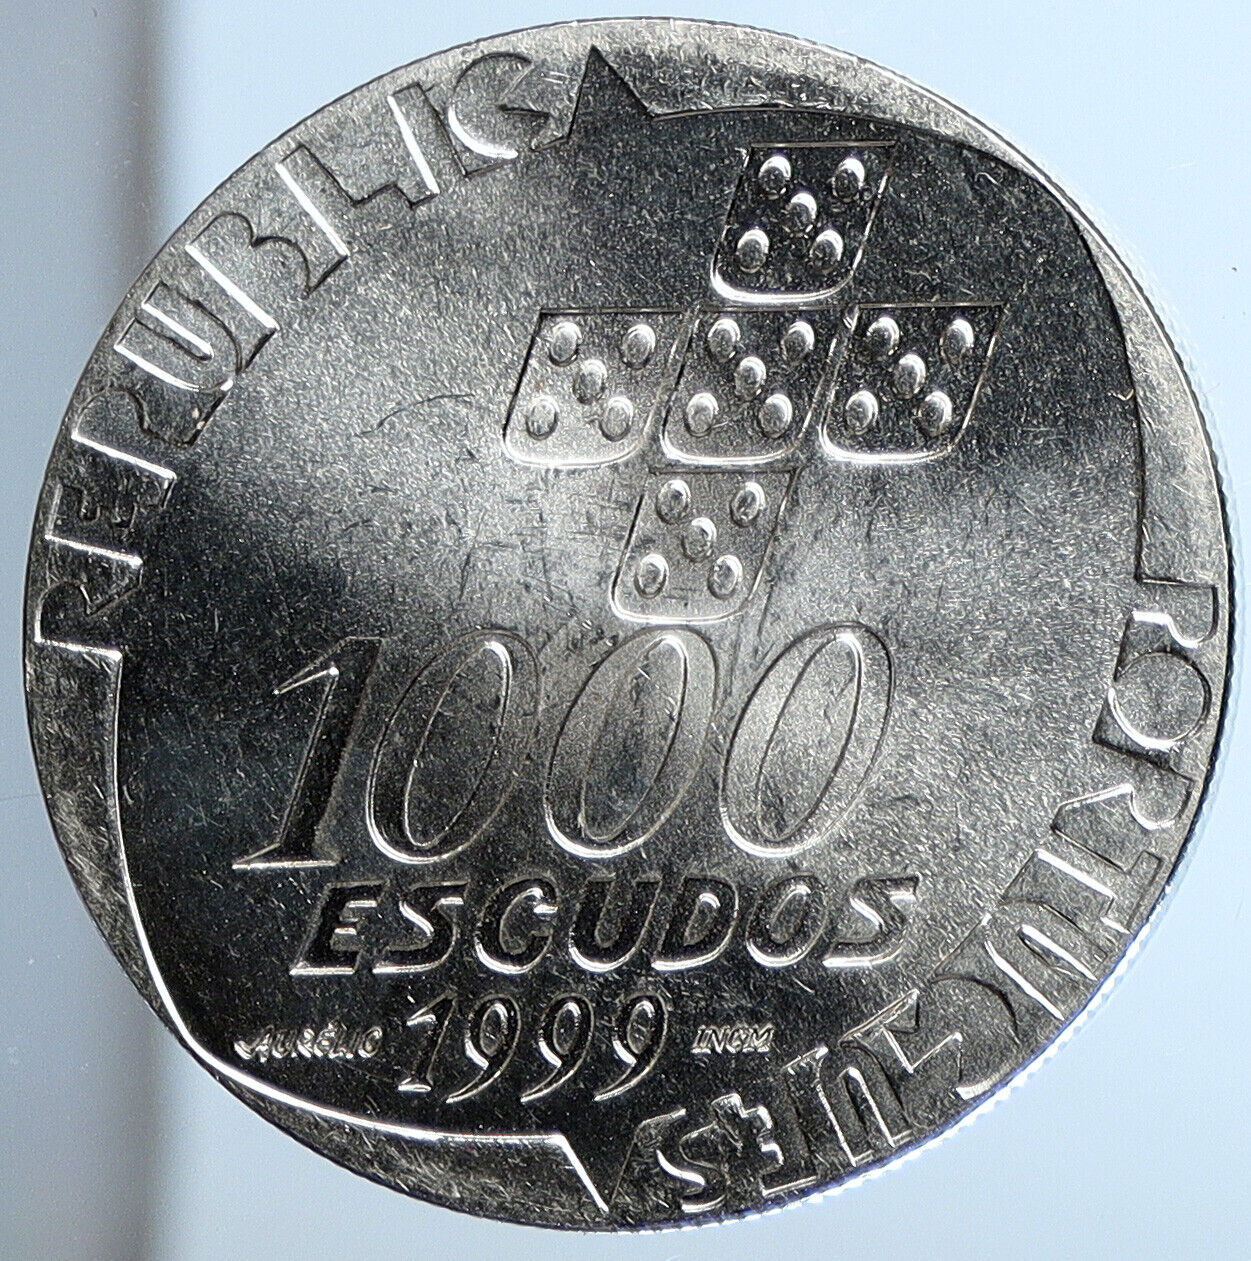 1999 PORTUGAL Revolution of April 25th OLD Proof Silver 1000 Escudo Coin i111399